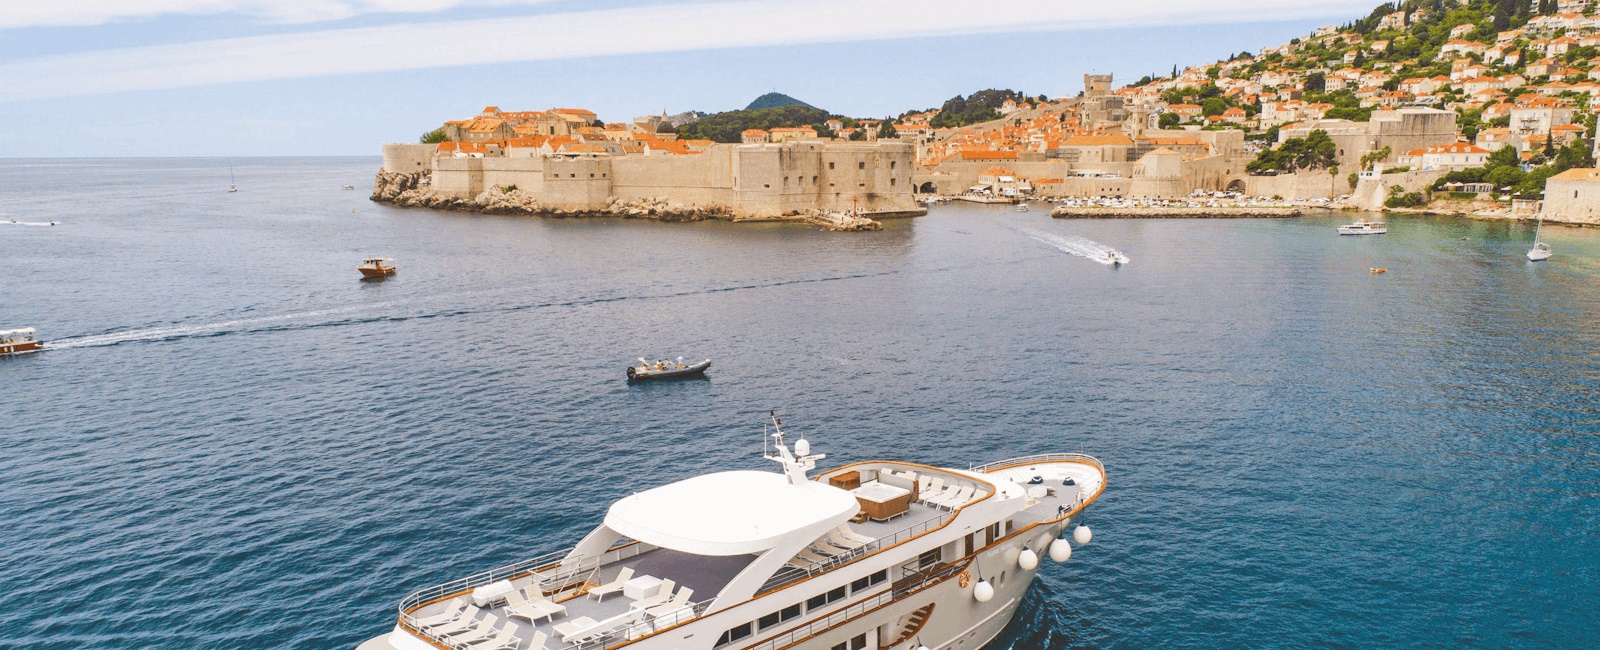 Luxury Cruise Holidays